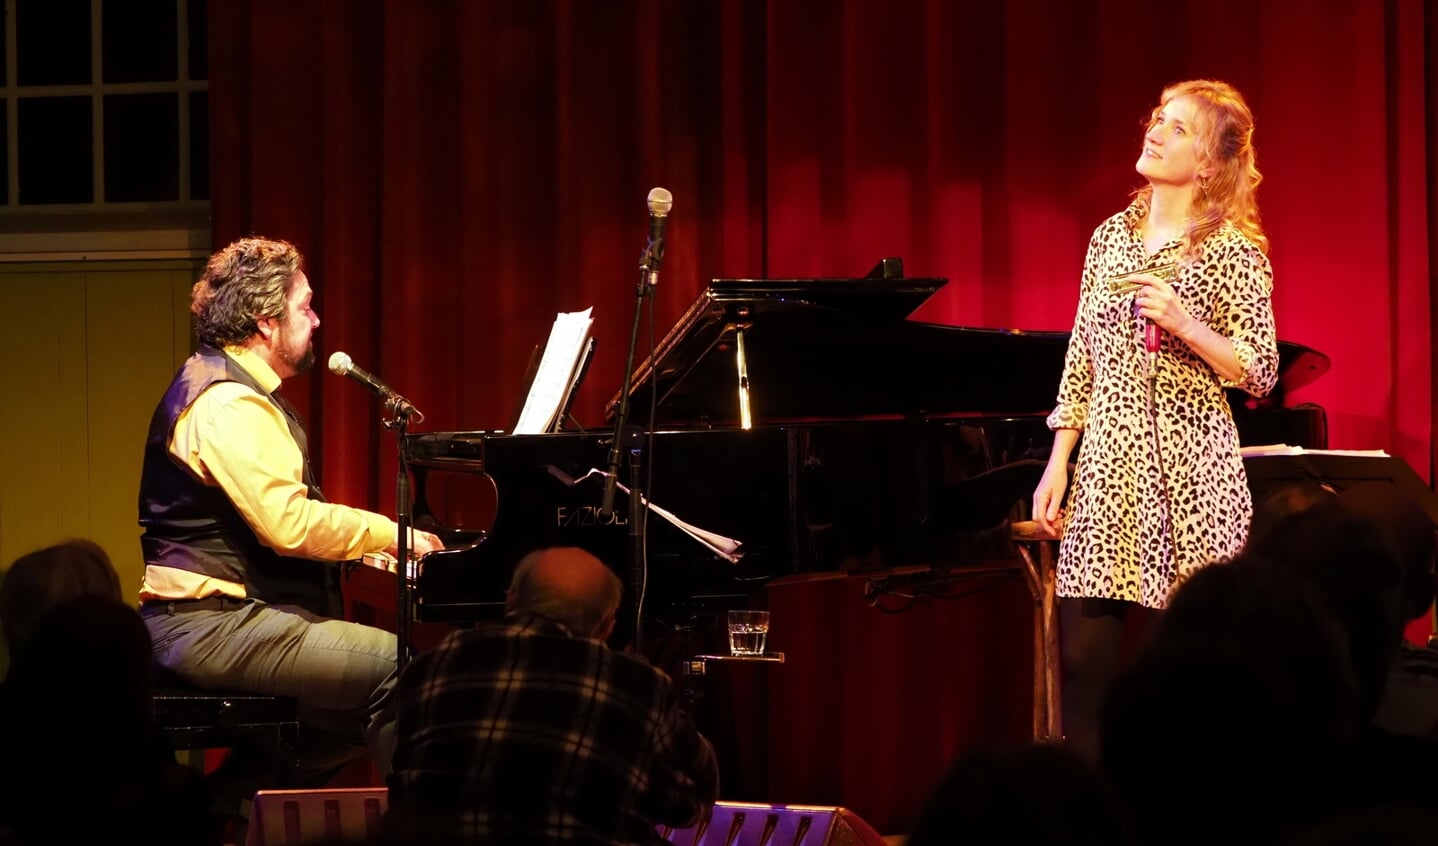 Pianist Mike Boddé en mondharmonicaspeelster Hermine Deurloo brengen samen met zangeres Lilian Vieira een ode aan de grondlegger van de bossanova.  